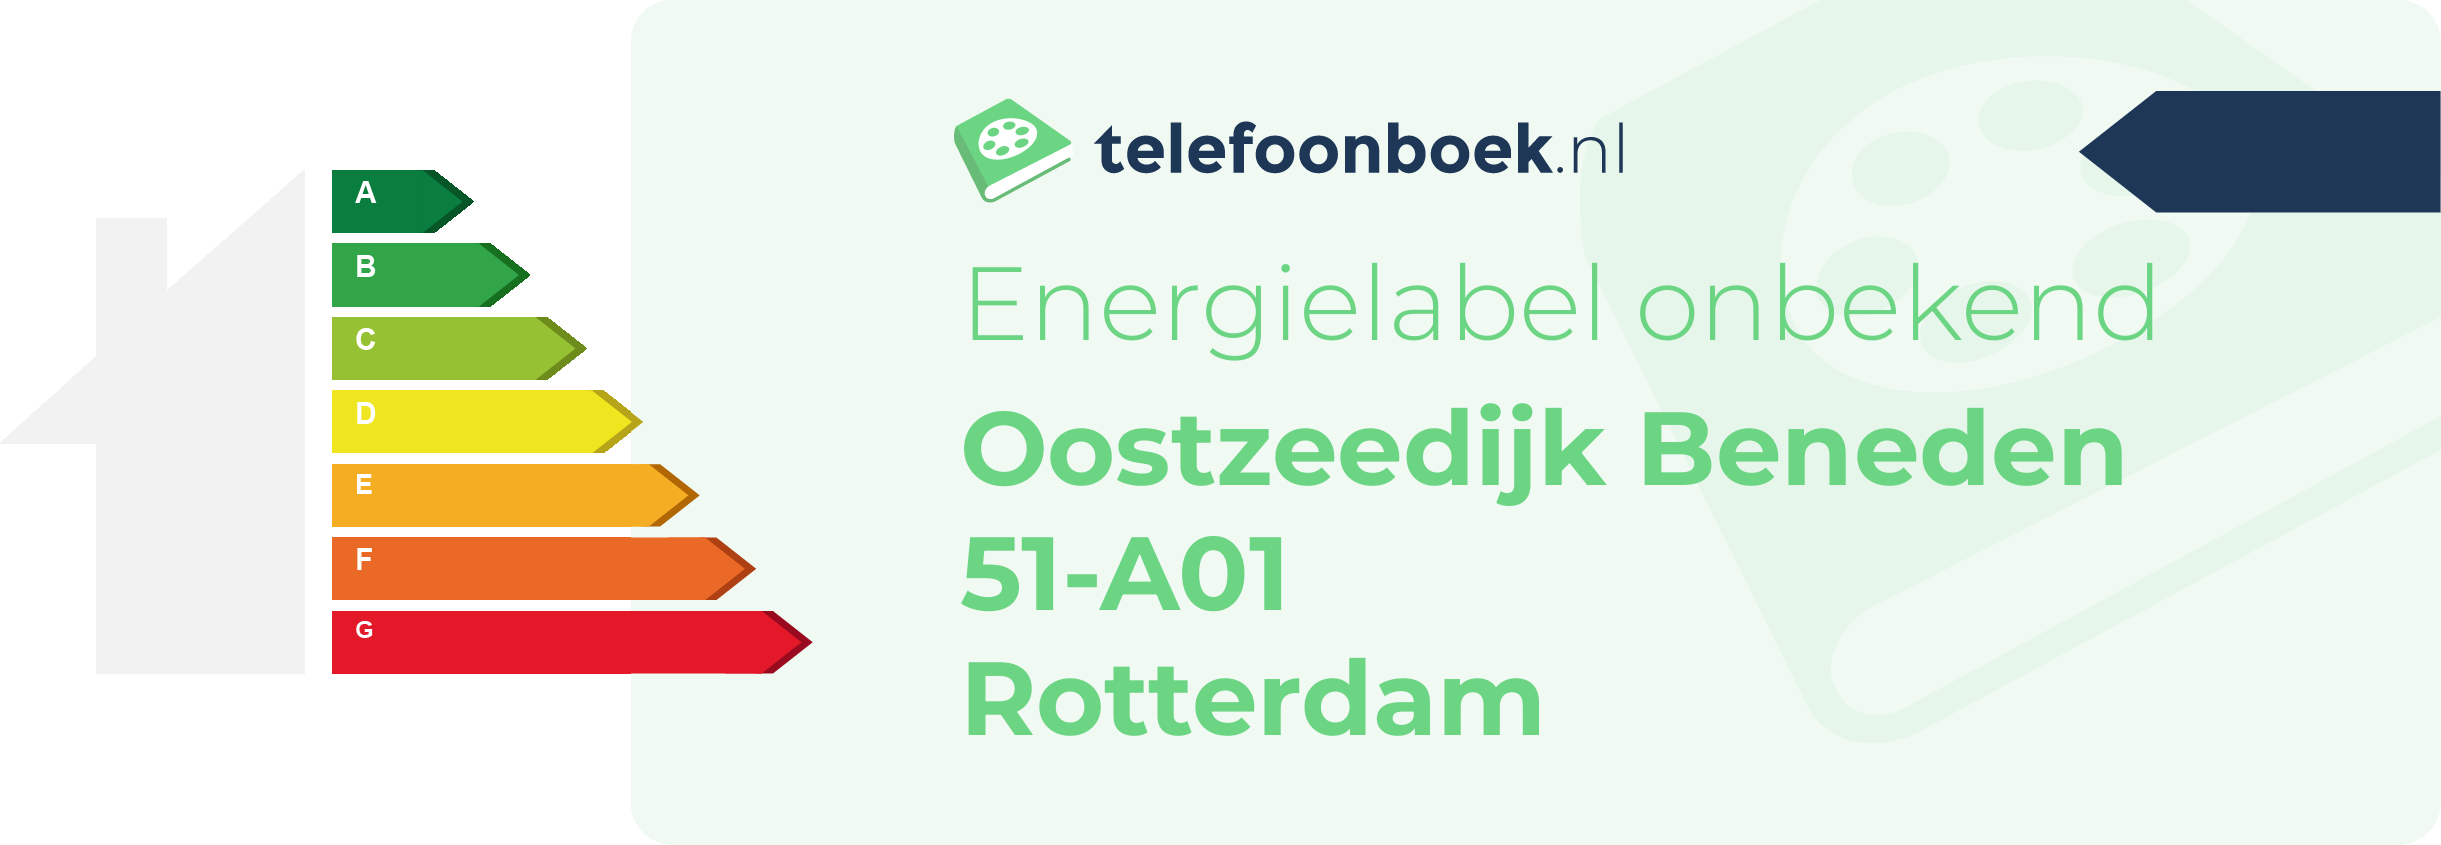 Energielabel Oostzeedijk Beneden 51-A01 Rotterdam